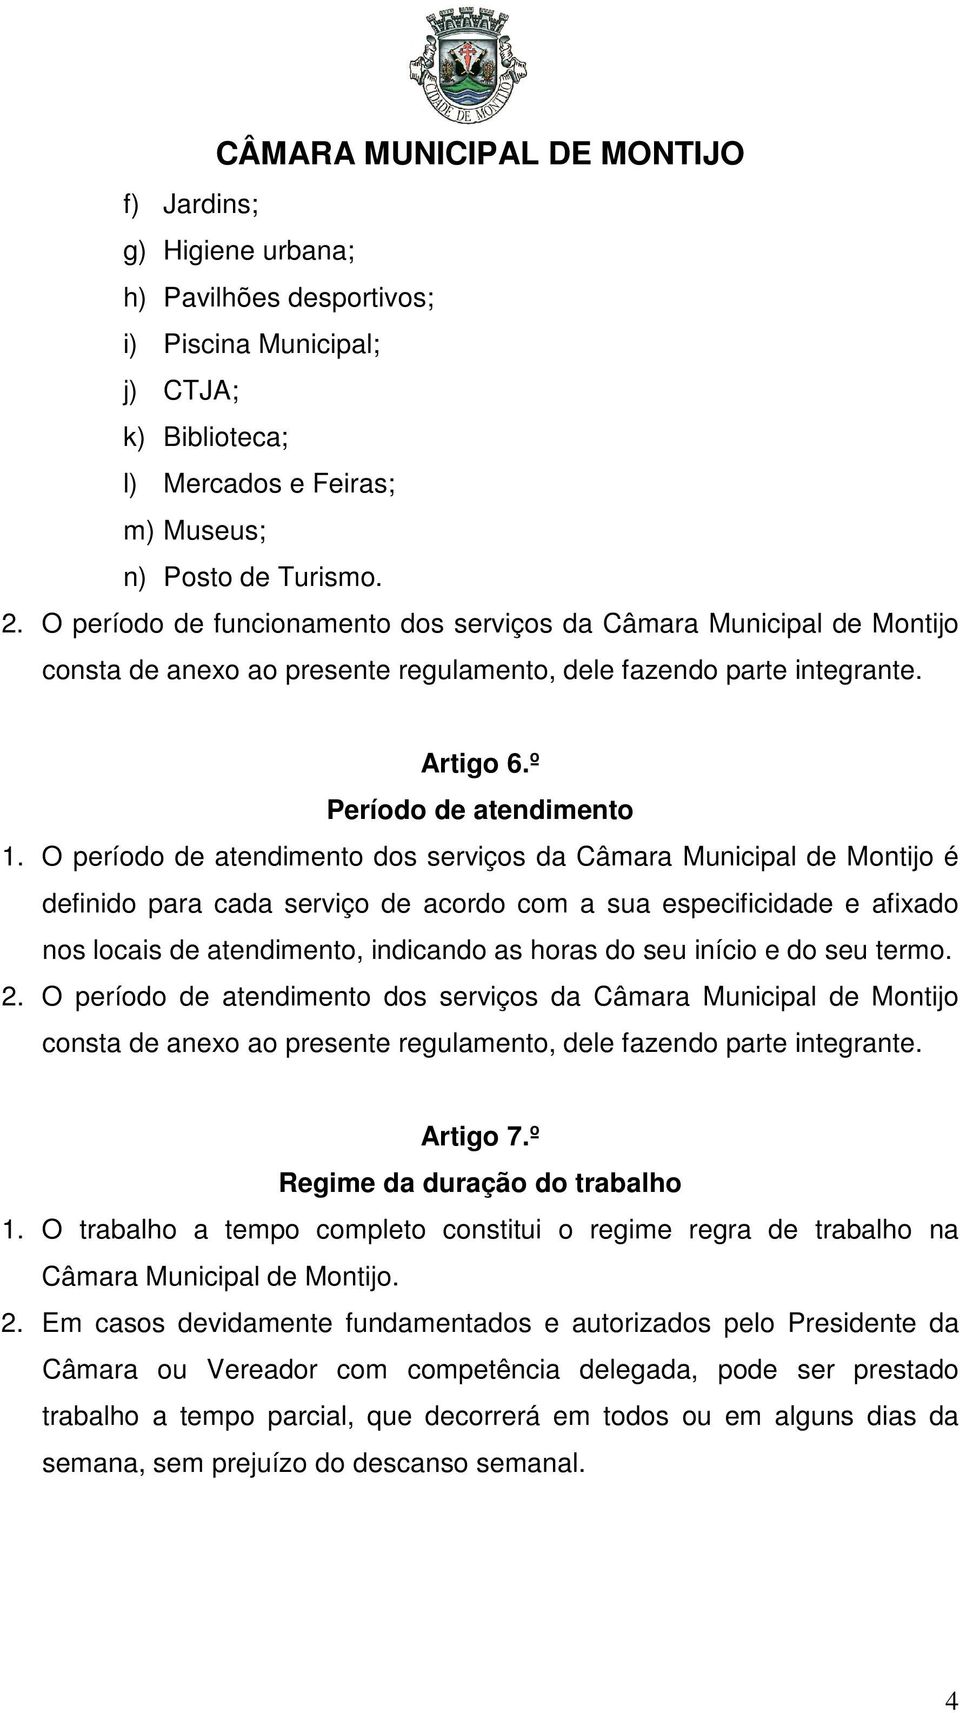 O período de atendimento dos serviços da Câmara Municipal de Montijo é definido para cada serviço de acordo com a sua especificidade e afixado nos locais de atendimento, indicando as horas do seu